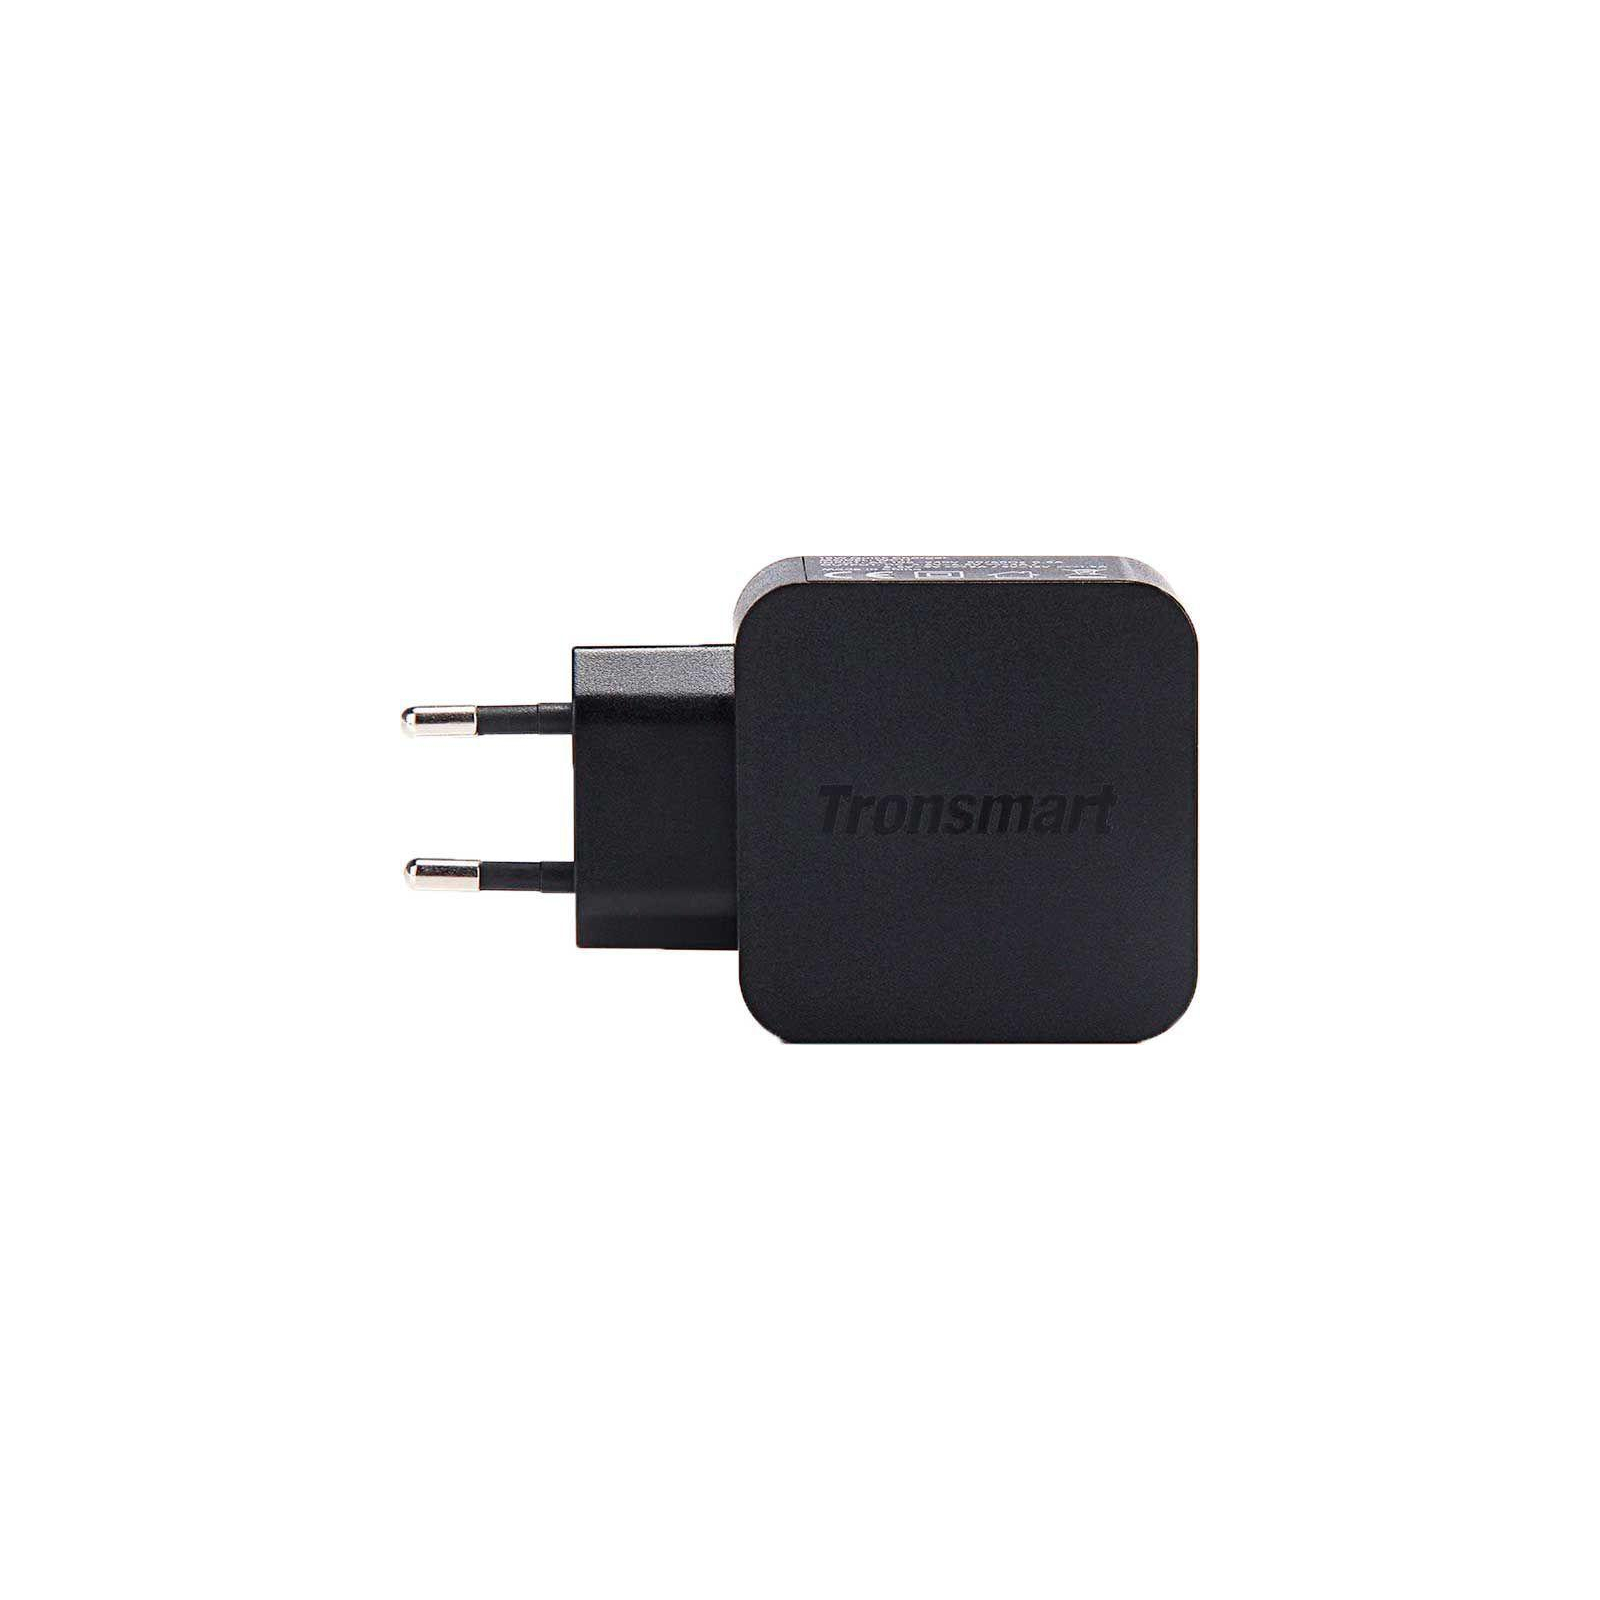 Зарядное устройство Tronsmart WC1T Quick Charge 3.0 Wall Charger Black (210775)